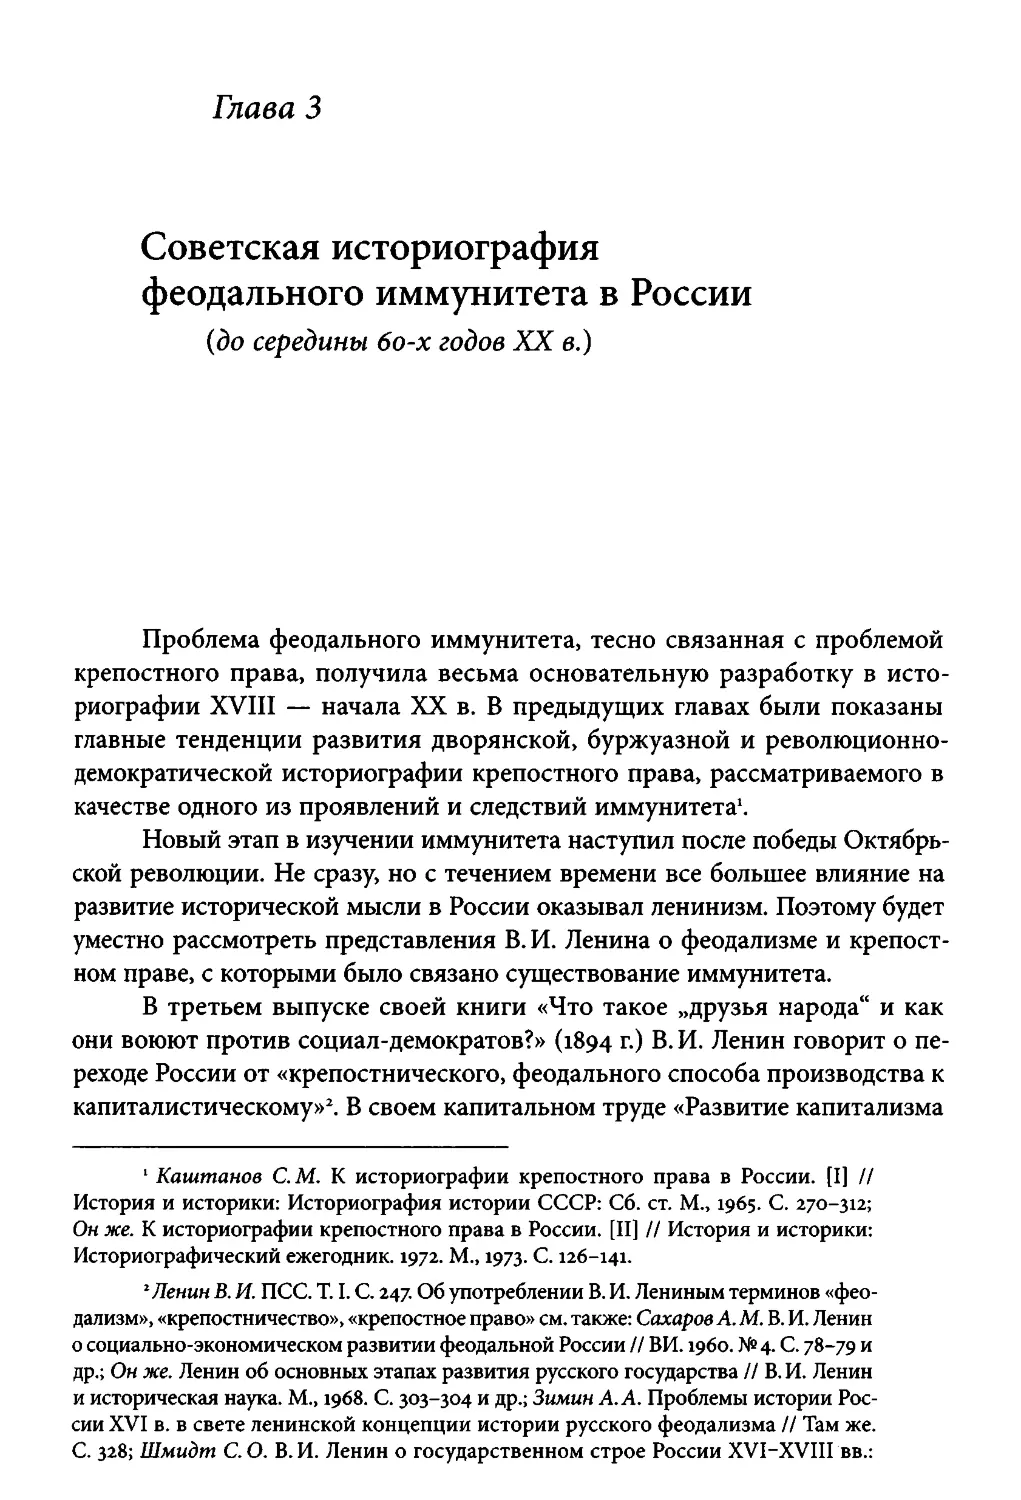 ﻿Глава 3. Советская историография феодального иммунитета в России øдо середины 60-х годов XX в.